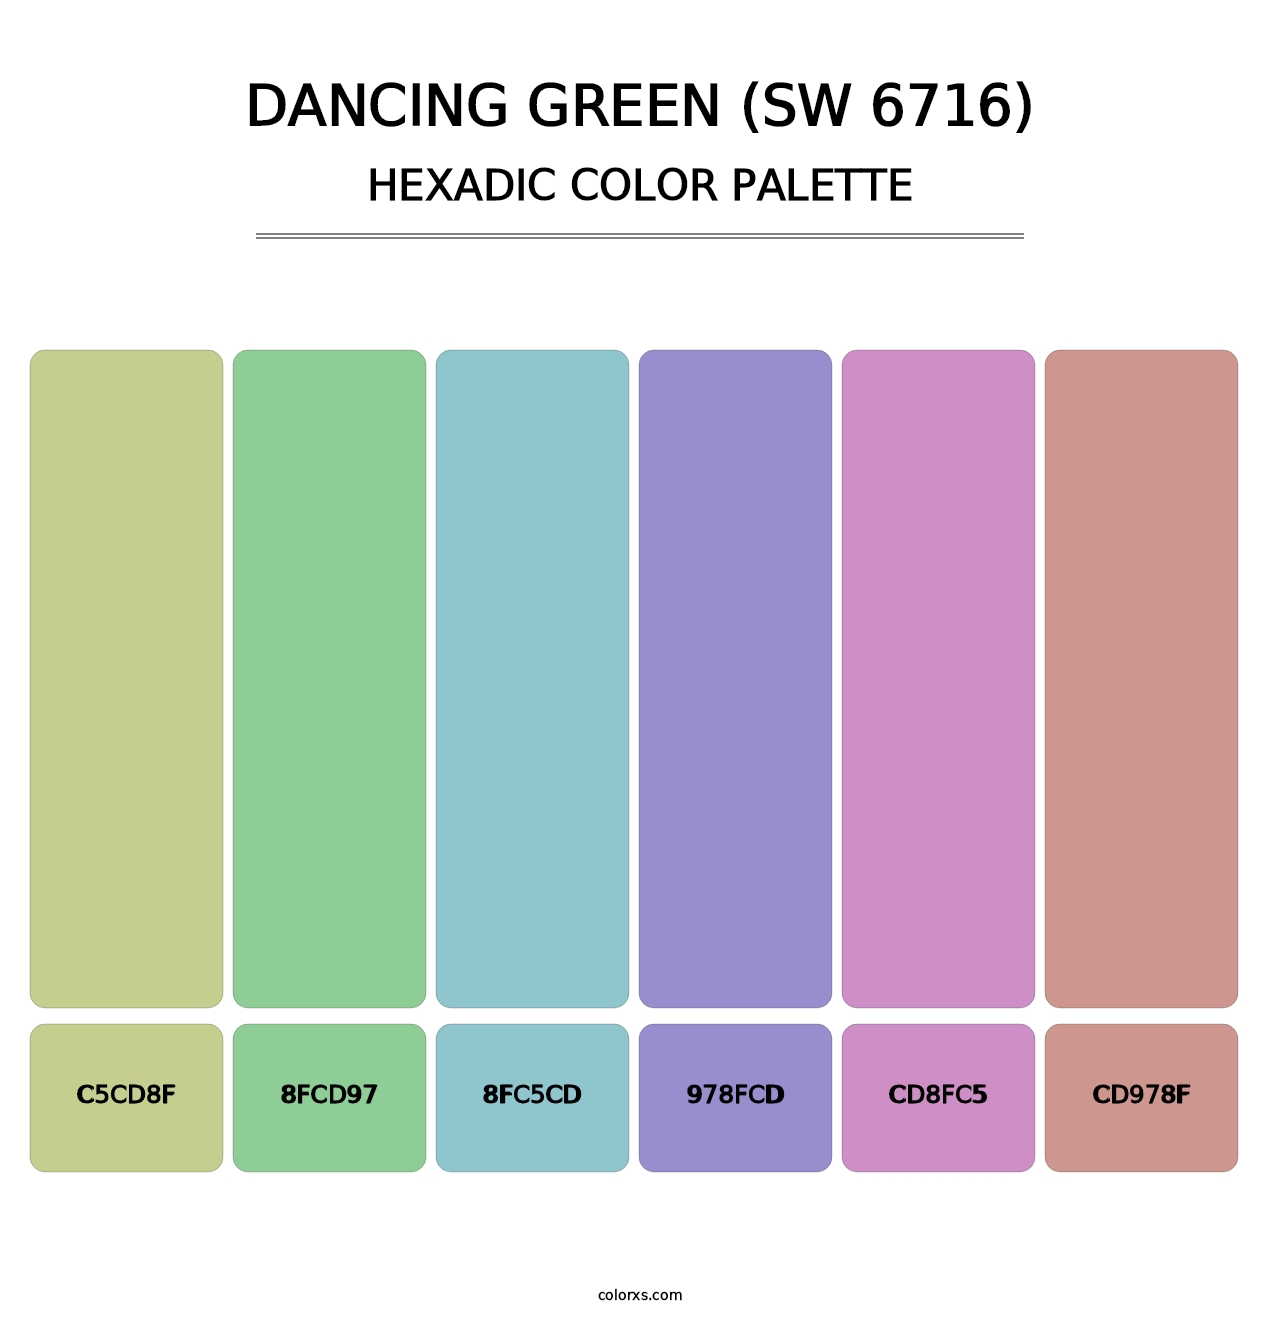 Dancing Green (SW 6716) - Hexadic Color Palette